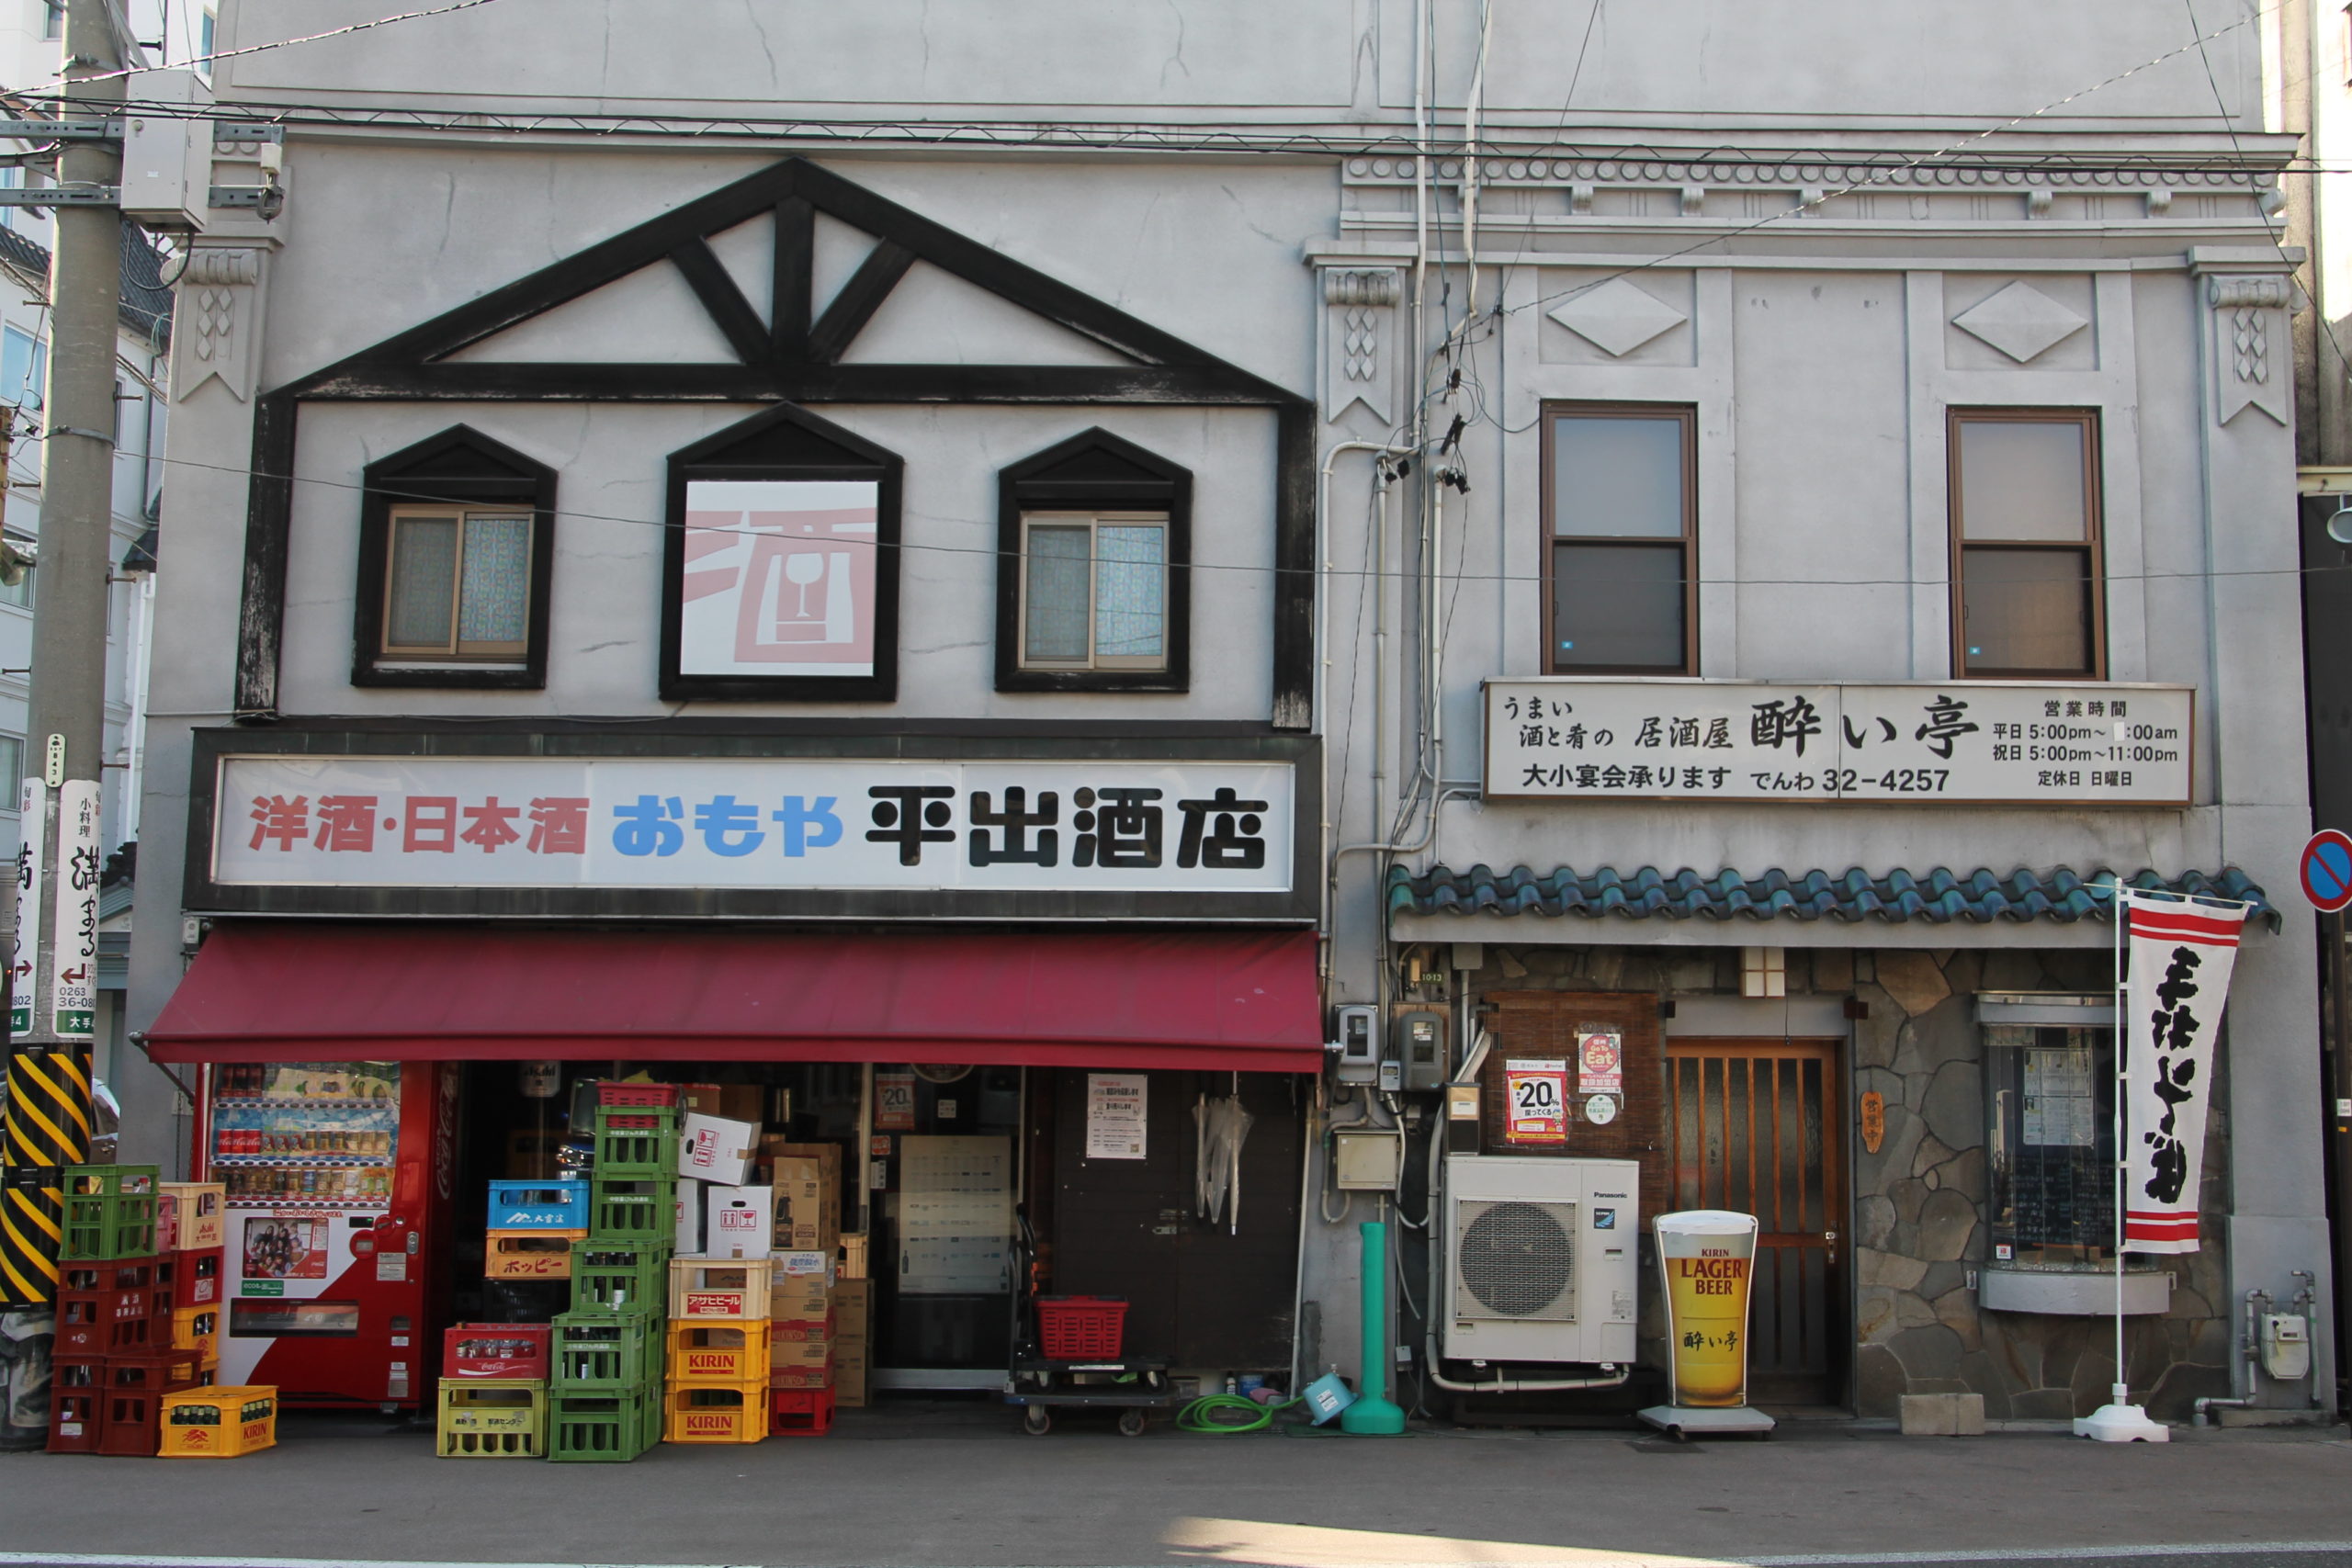 Le Quartier Agetsuchi-machi bâtiment